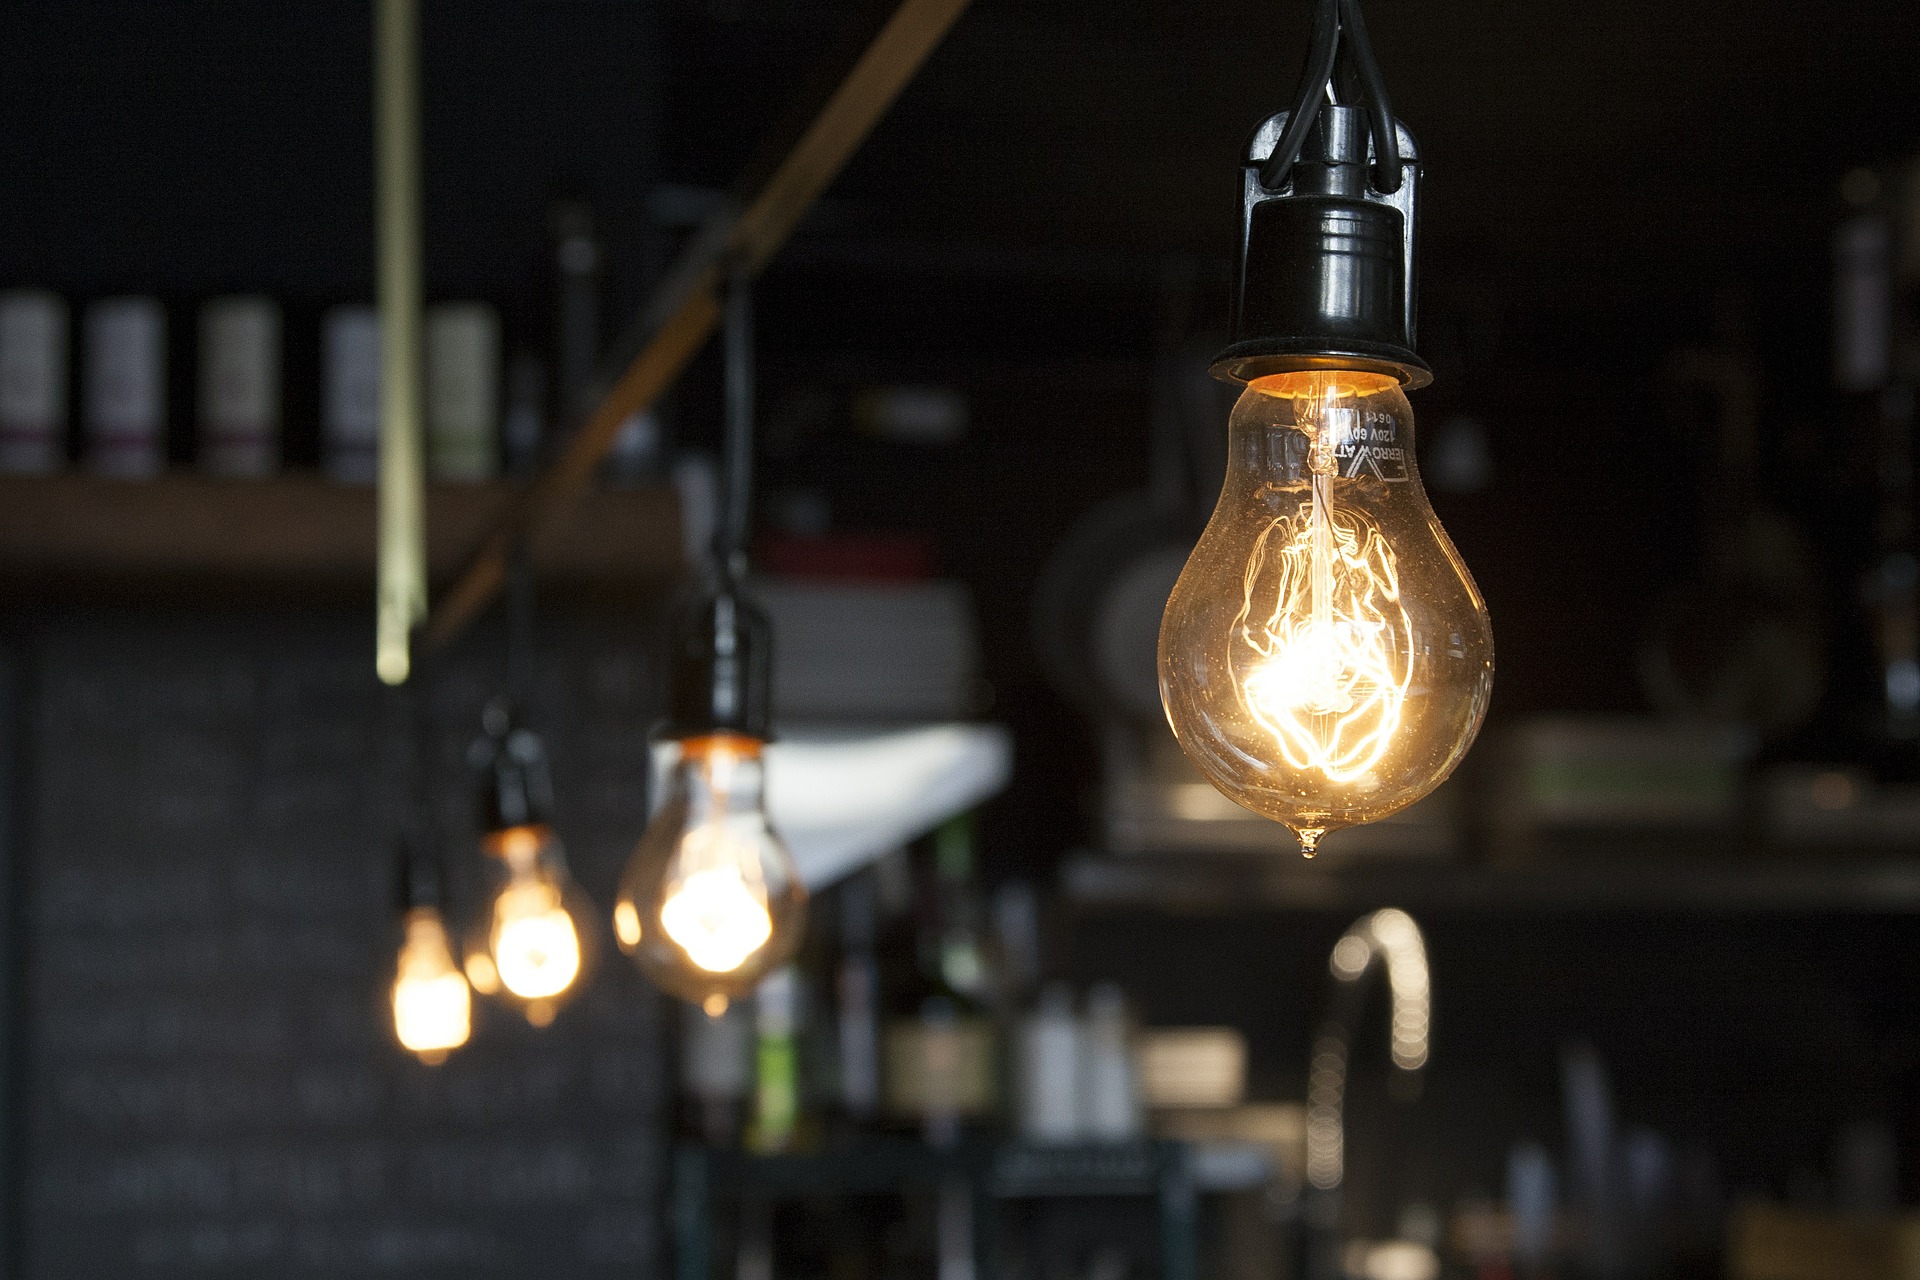 Abraceel sai em defesa do open energy e quer ‘dados abertos’ na conta de luz. Na imagem, lâmpadas acesas (Foto: Pixabay)